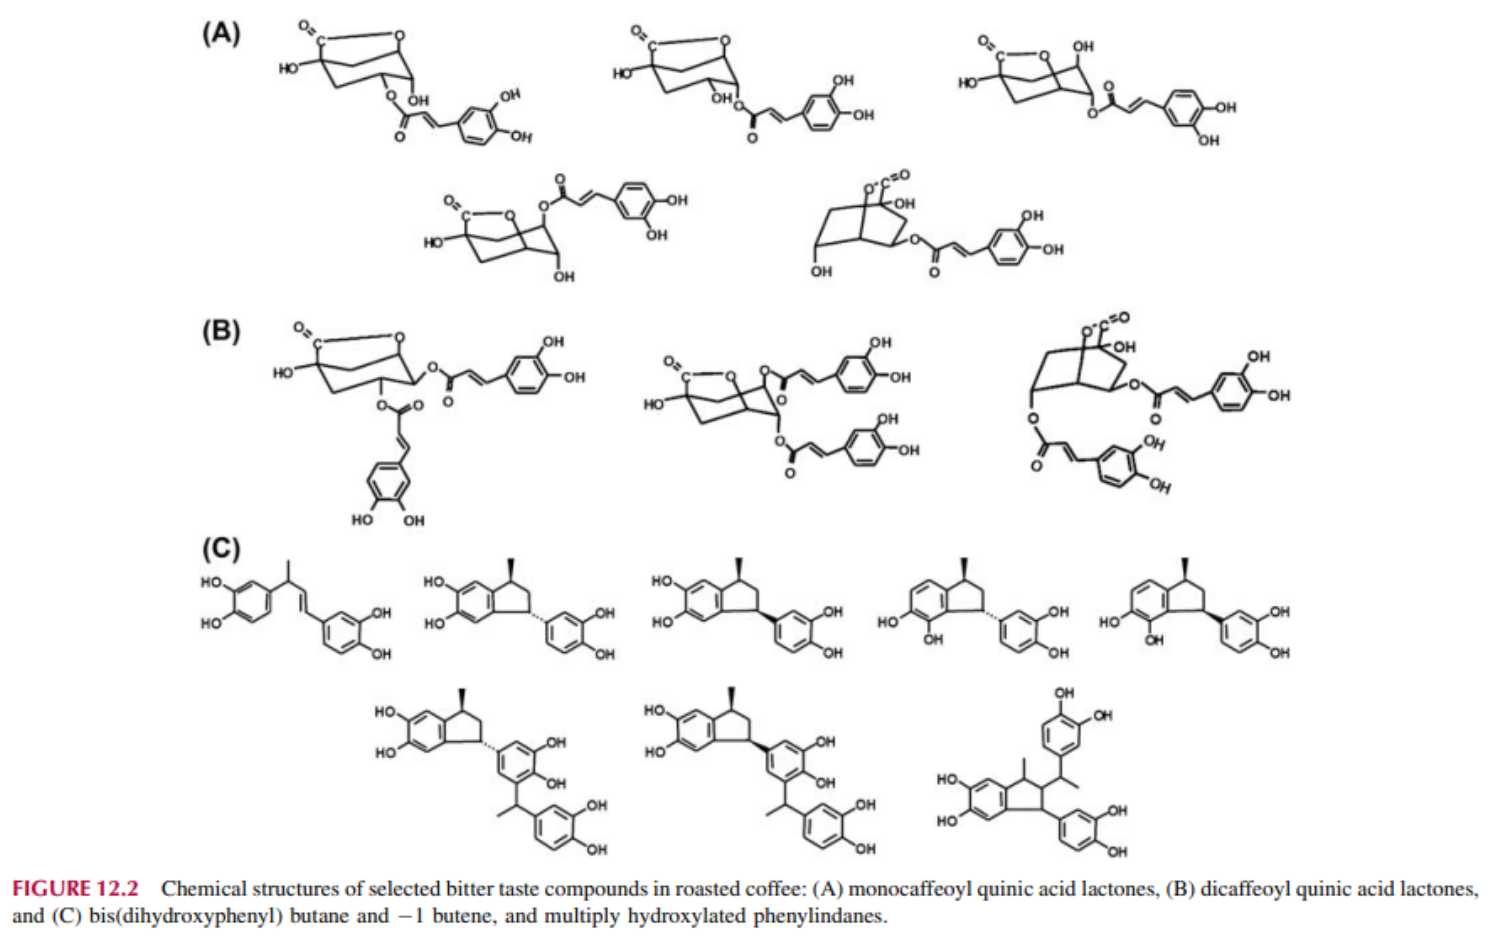 Cấu trúc hóa học của các hợp chất vị đắng chọn lọc trong cà phê rang: (A) monocaffeoyl quinic acid lacton, (B) dicaffeoyl quinic acid lacton, và (C) bis(dihydroxyphenyl) butan và 1 butene, và nhân phenylindan hydroxyl hóa.